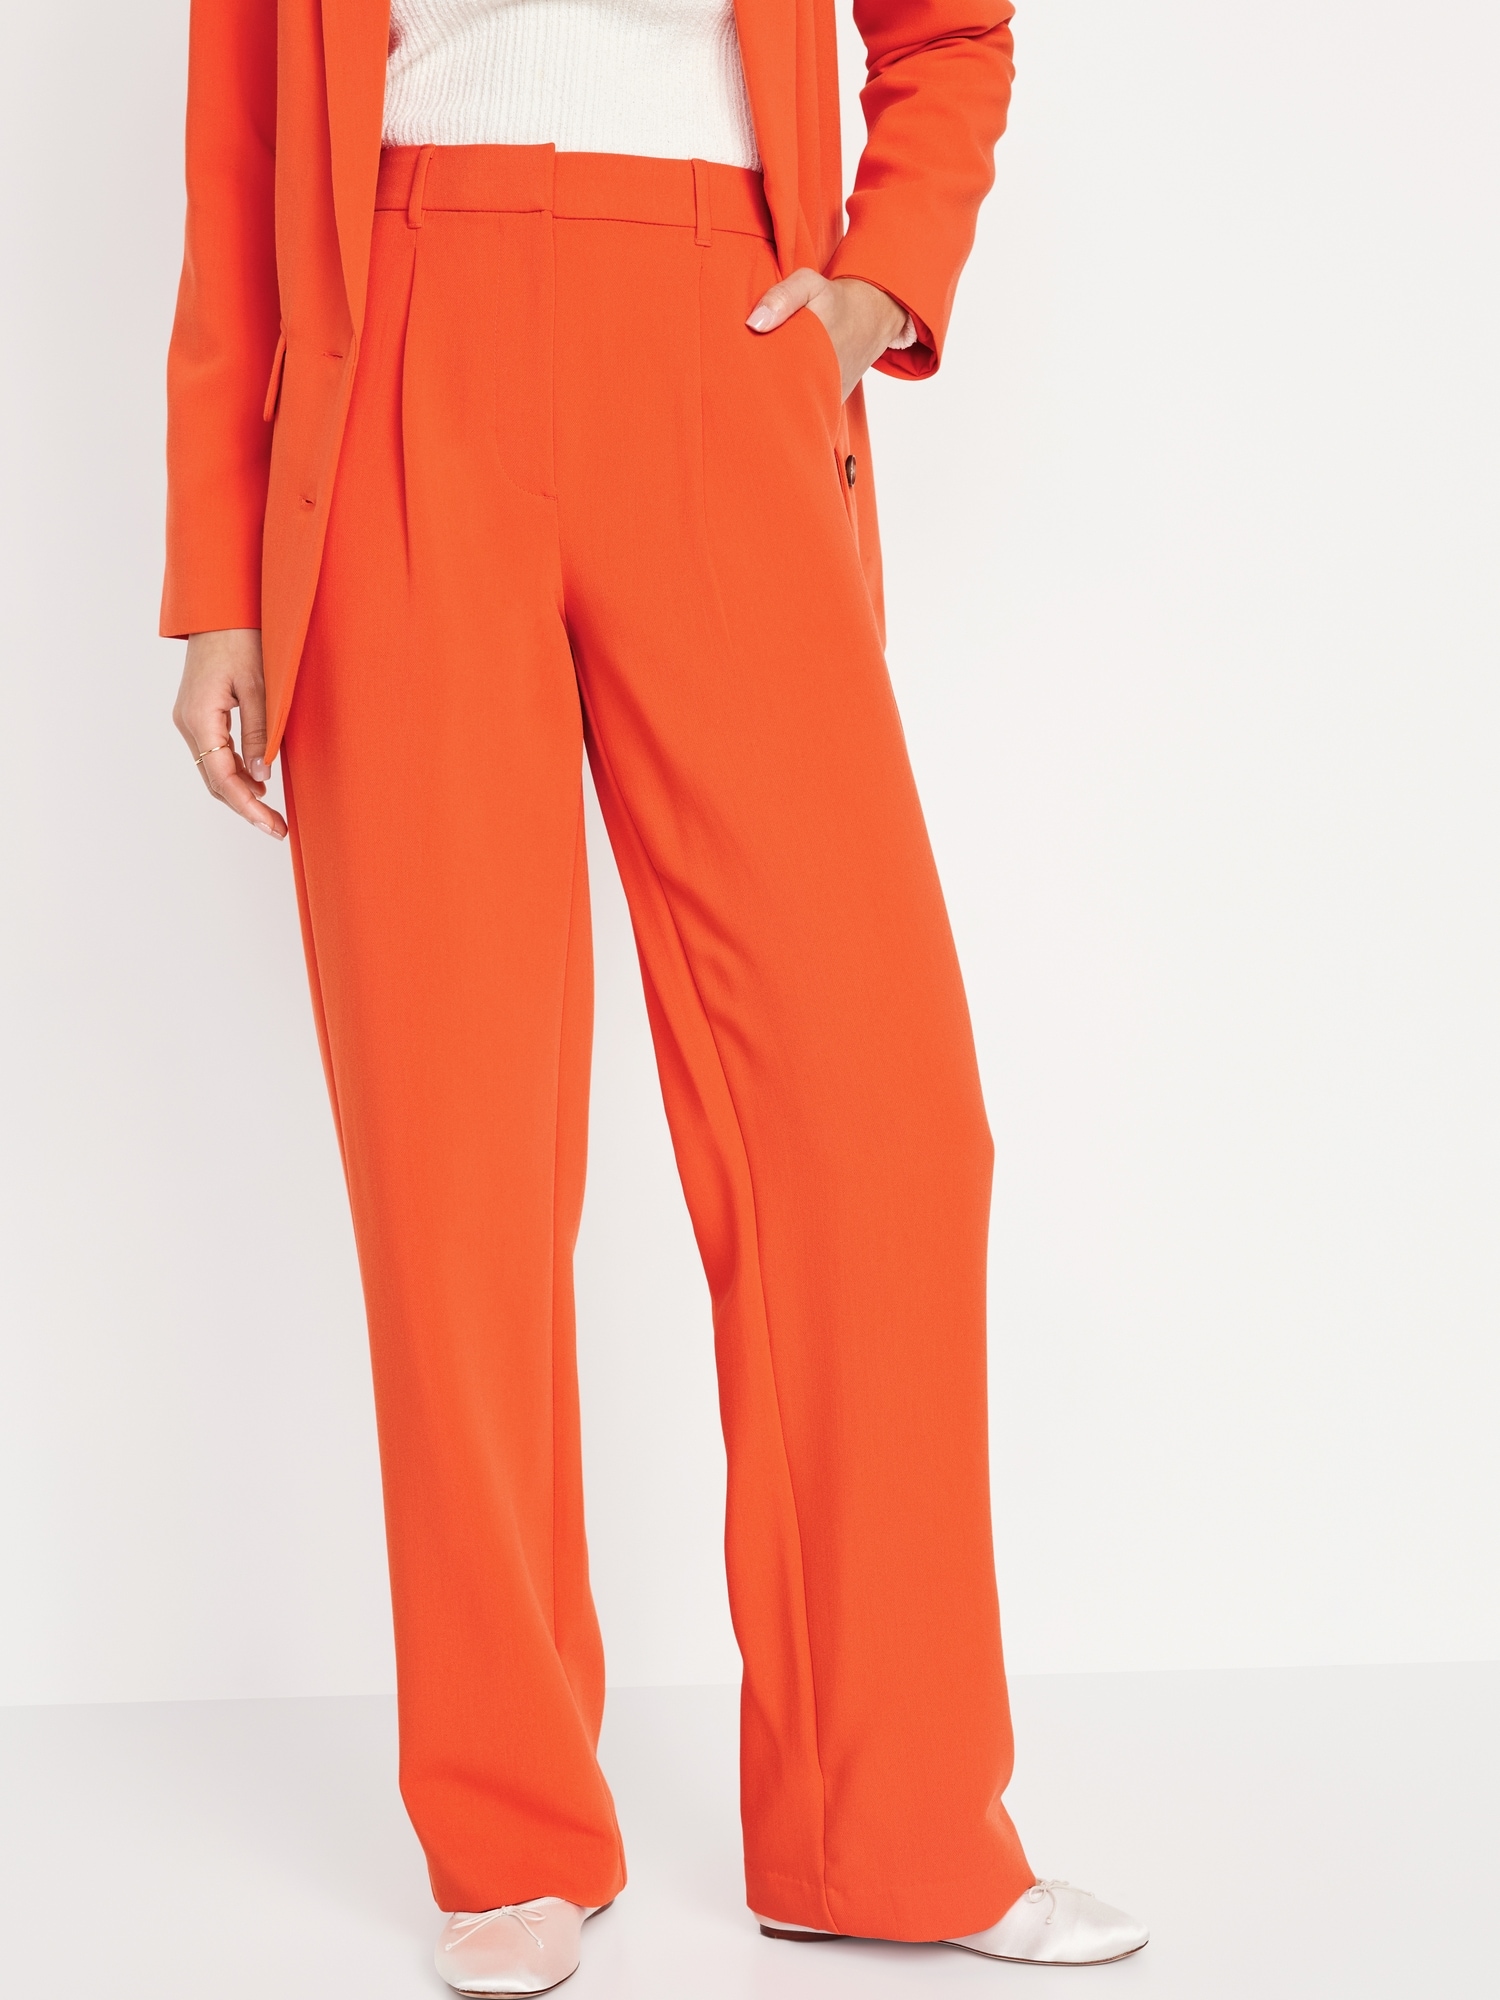 PAN0001 - Women's Regular Fit Cotton Slub Trouser/Pant for Girls & Women ( Orange)